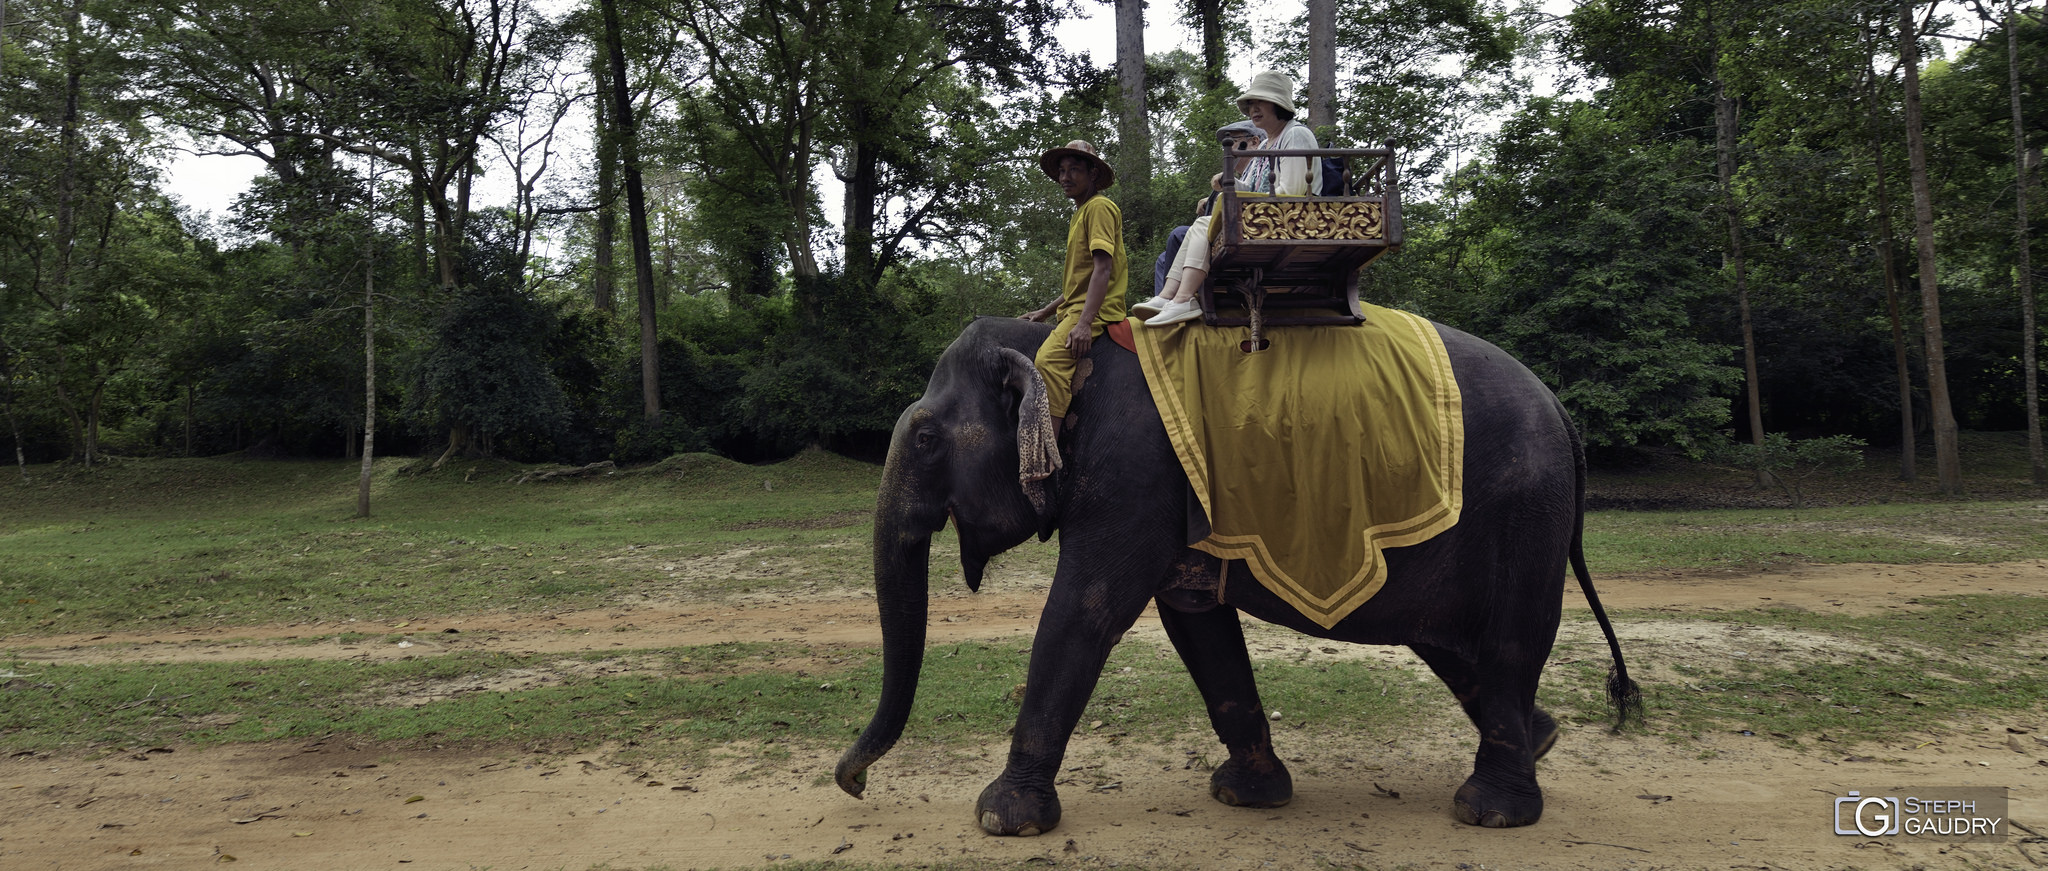 Eléphant au Cambodge [Cliquez pour lancer le diaporama]